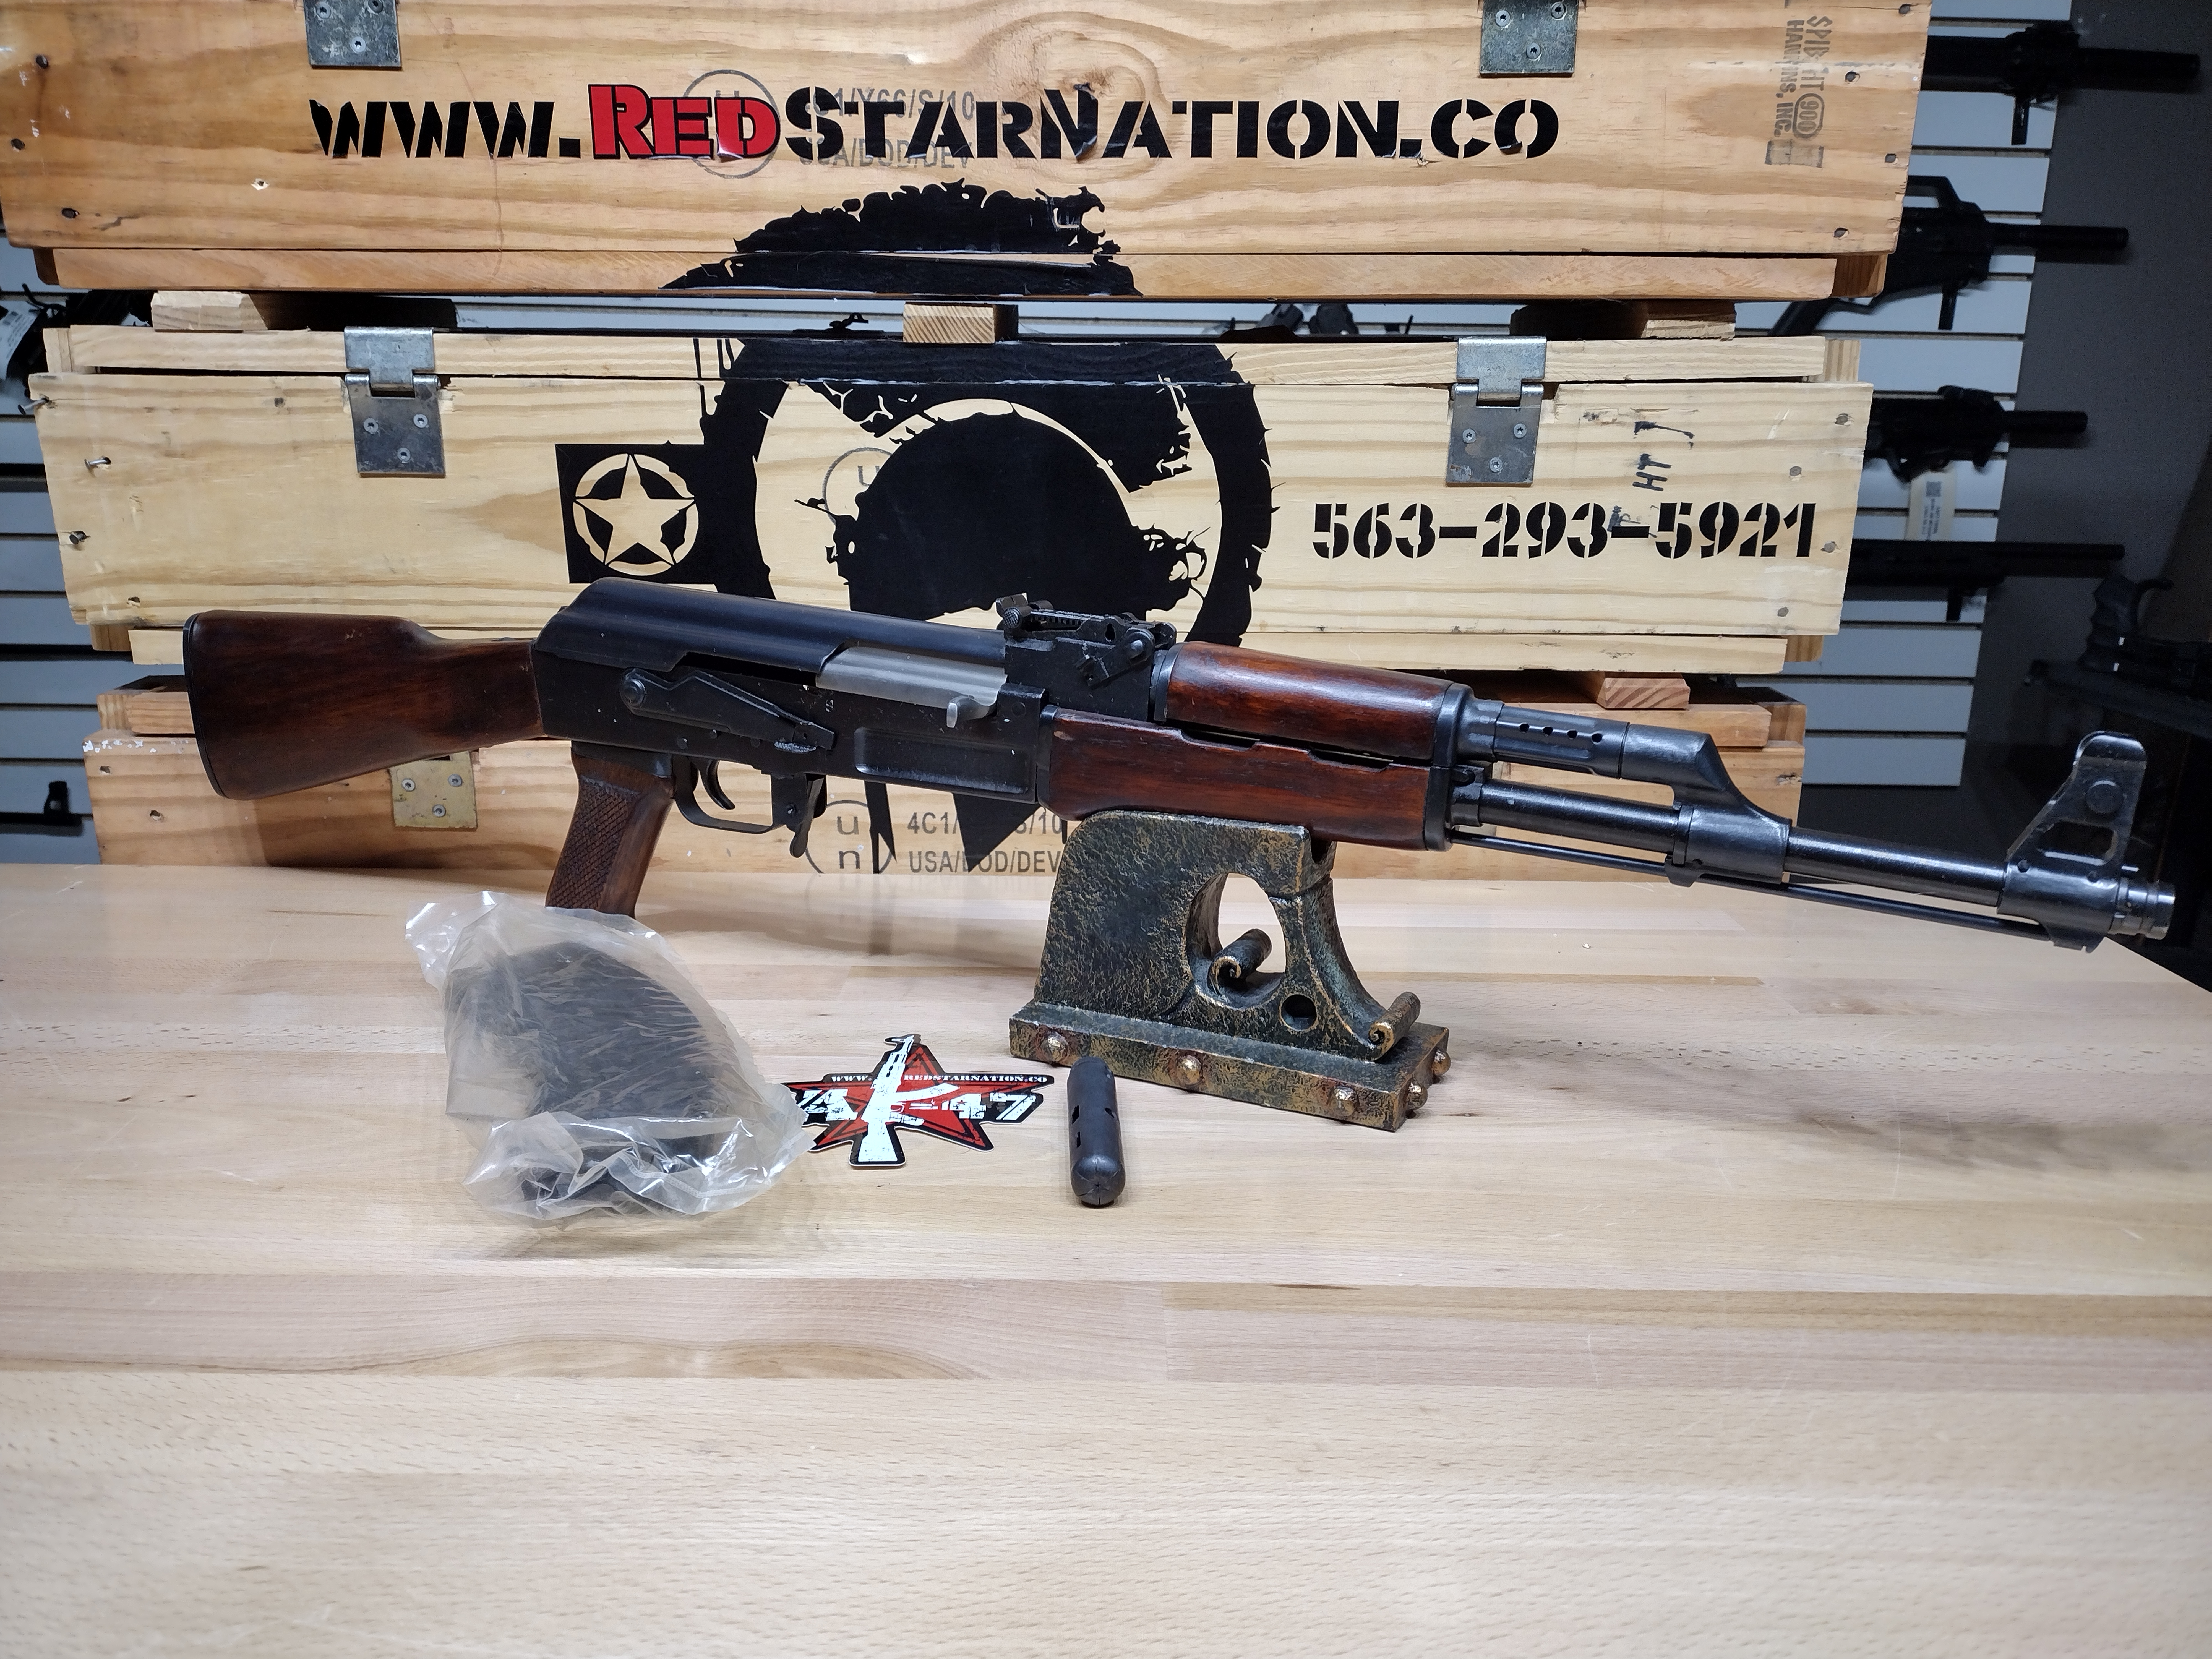 Polytech AK-47S Semi Auto Rifle Auction 7.62x39